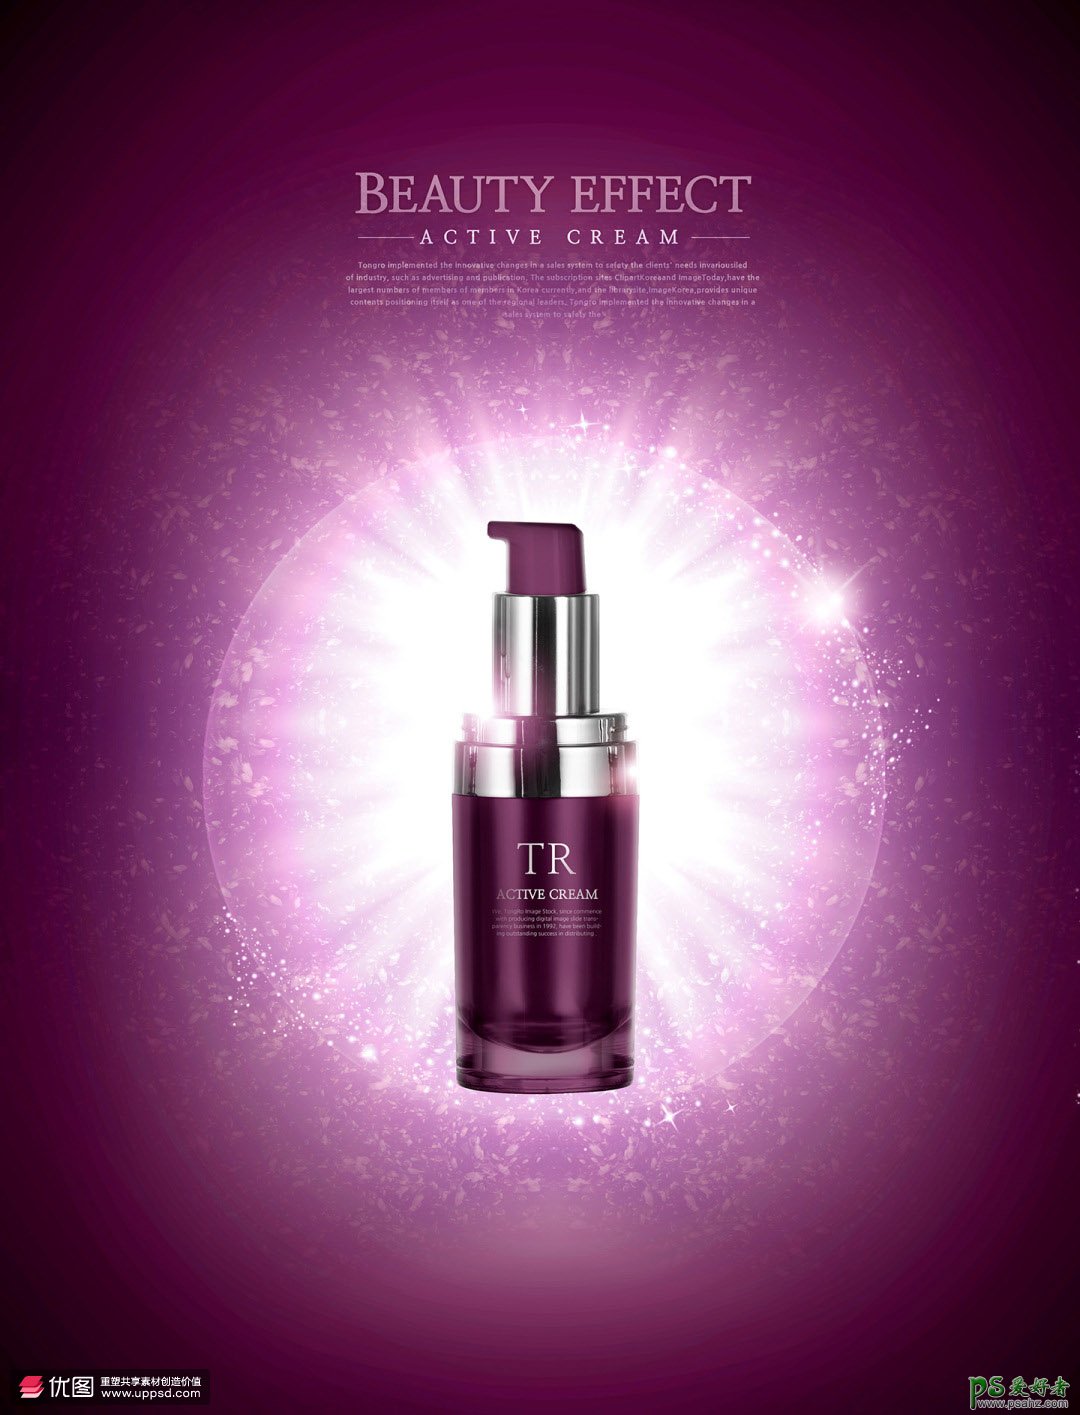 唯美梦幻效果的化妆品平面广告设计效果图，唯美飘逸的化妆品海报